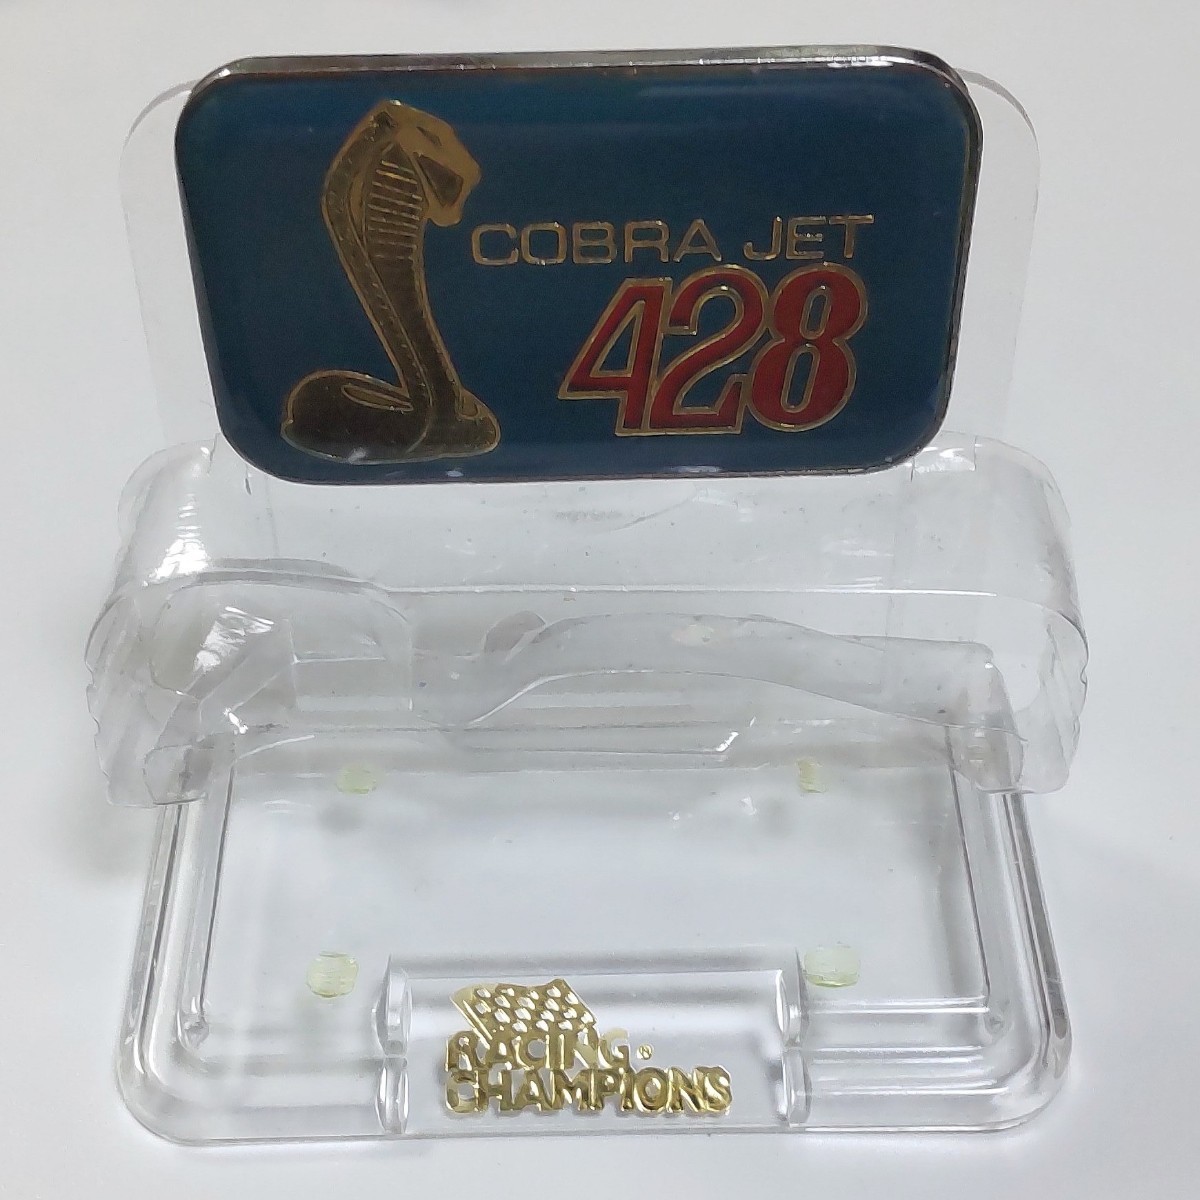 COBRA JET 428 コブラ RACING CHAMPIONS MINT EDITION レーシングチャンピオン ミントエディション ダイキャスト ミニカー FORD 1/64_画像6